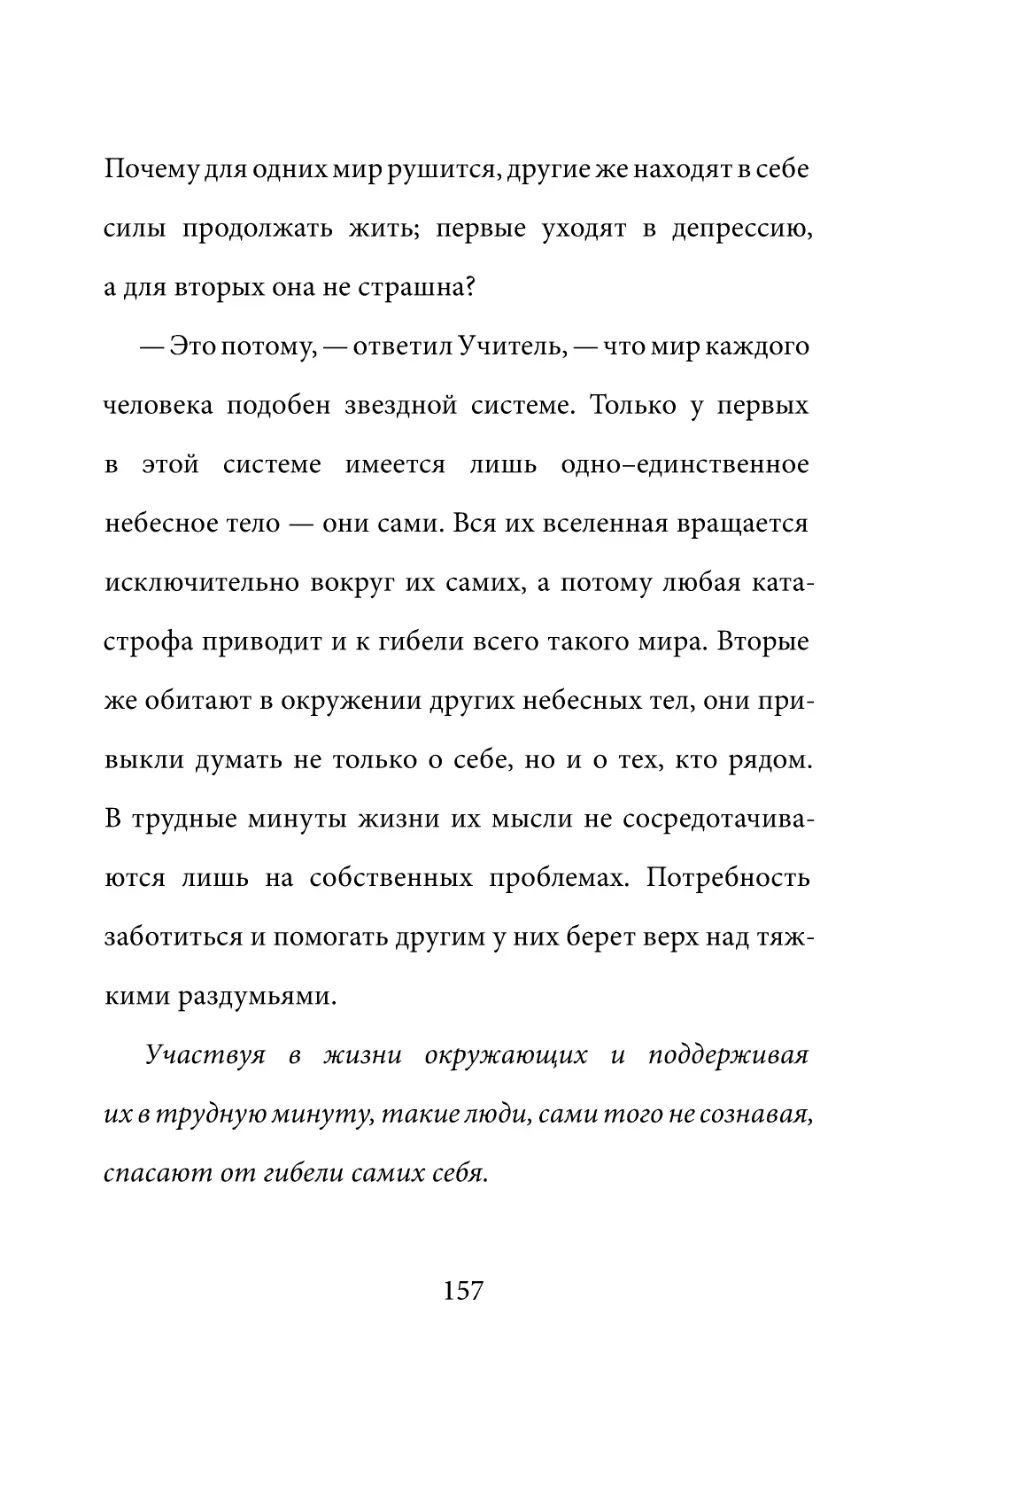 Sergey_Filippov_Dnevnik_samorazvitia_Evolyutsia_Vnutrennego_Sostoyania_157.pdf (p.157)